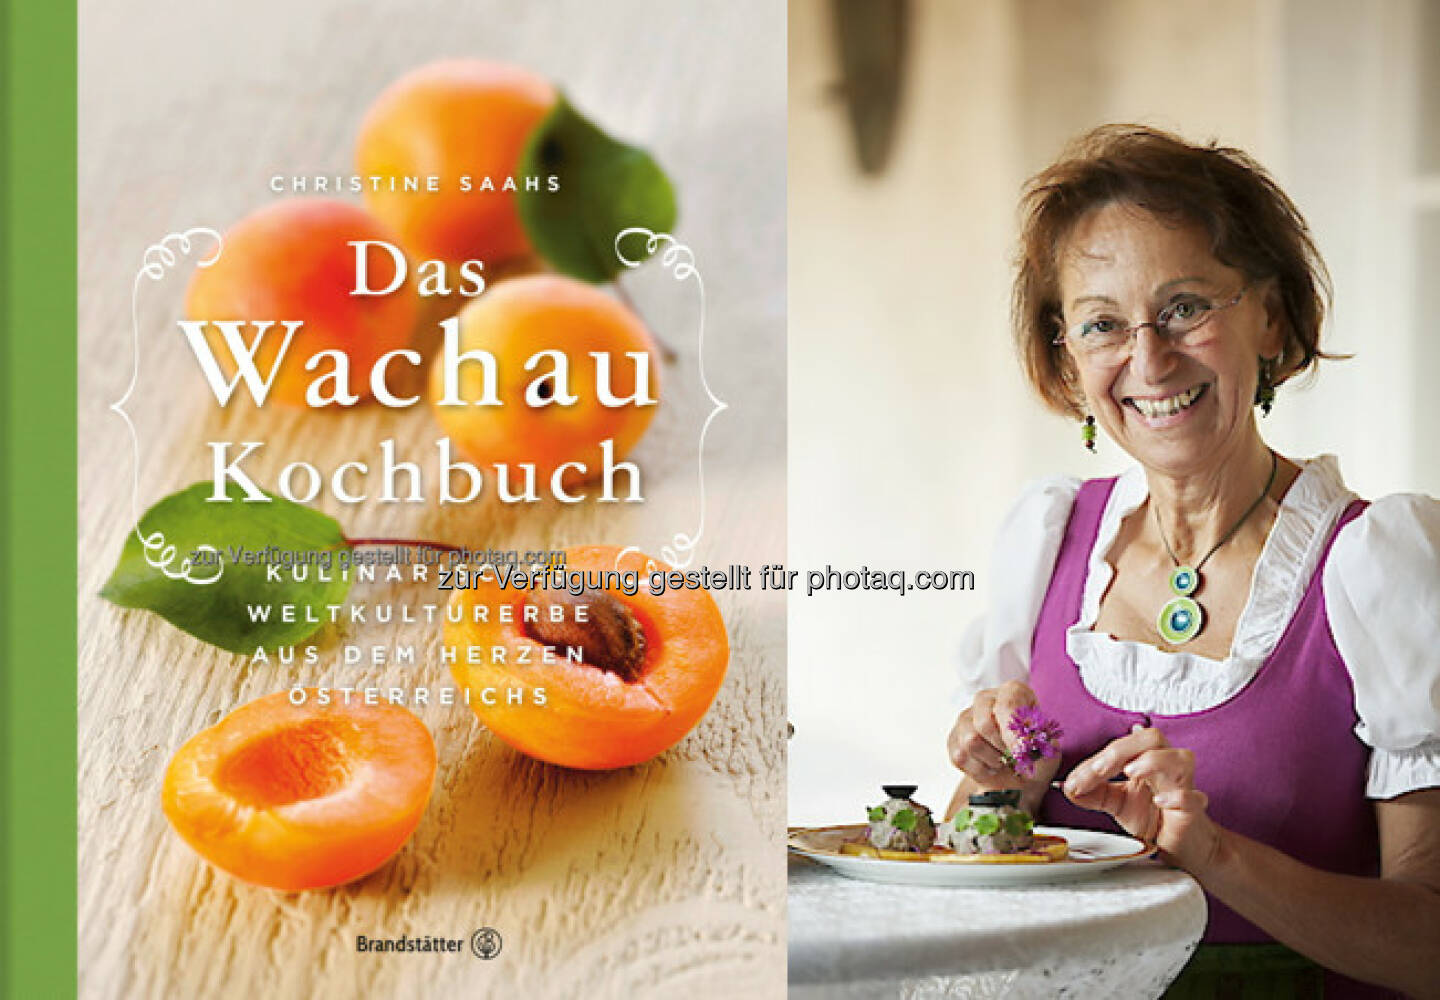 Christine Saahs : Wachau-Kochbuch zum weltweit besten regionalen Kochbuch gekürt : Fotocredit: Nikolaihof Wachau/Eisenberger